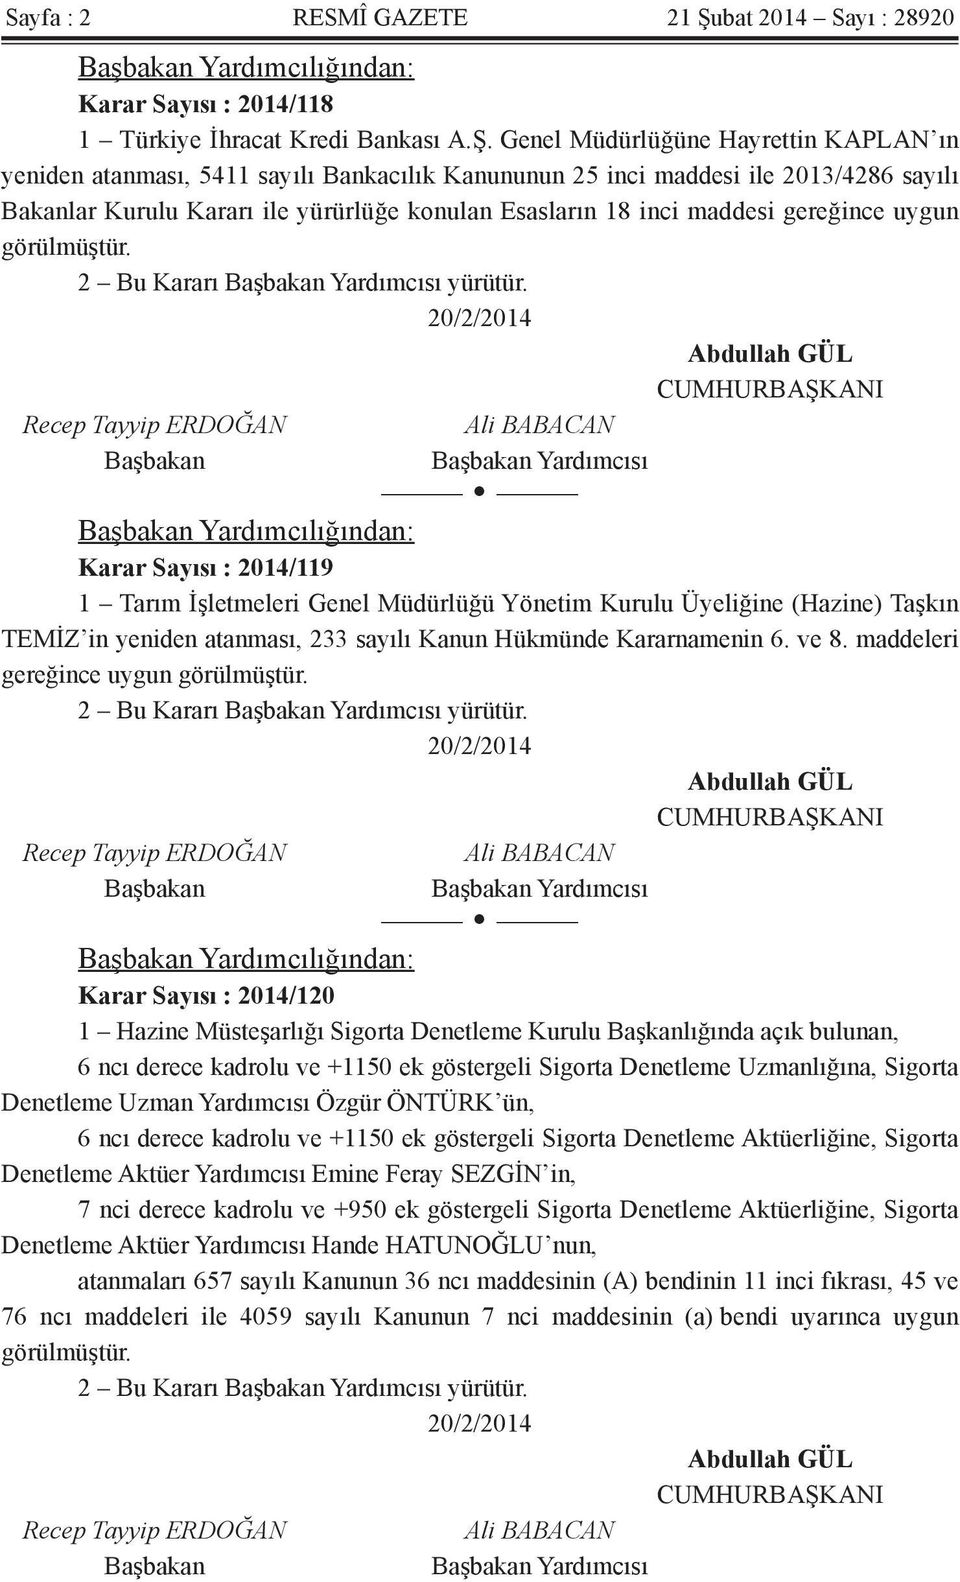 Genel Müdürlüğüne Hayrettin KAPLAN ın yeniden atanması, 5411 sayılı Bankacılık Kanununun 25 inci maddesi ile 2013/4286 sayılı Bakanlar Kurulu Kararı ile yürürlüğe konulan Esasların 18 inci maddesi